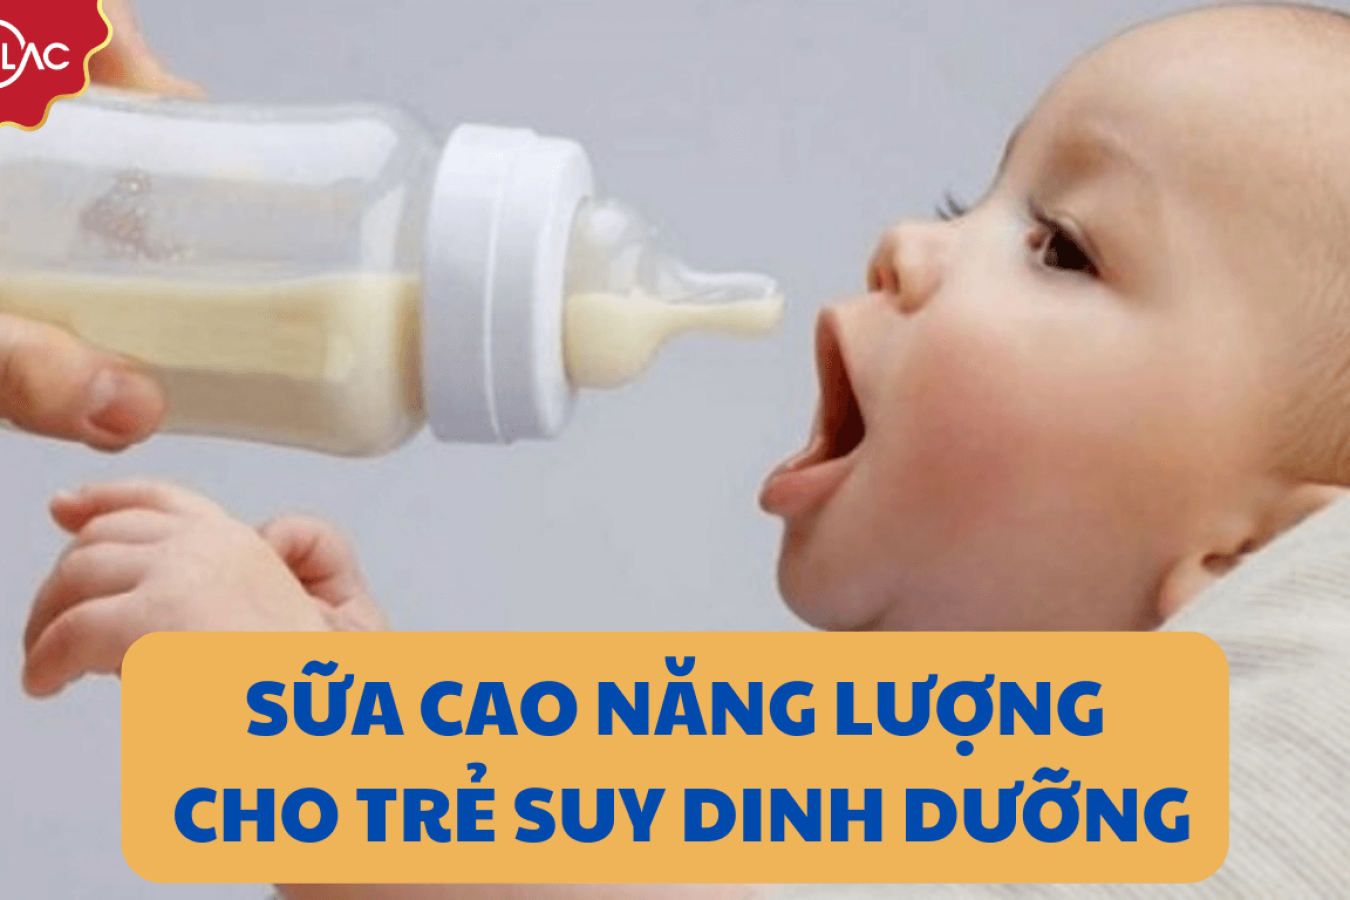 Có nên dùng sữa cao năng lượng cho trẻ suy dinh dưỡng không?